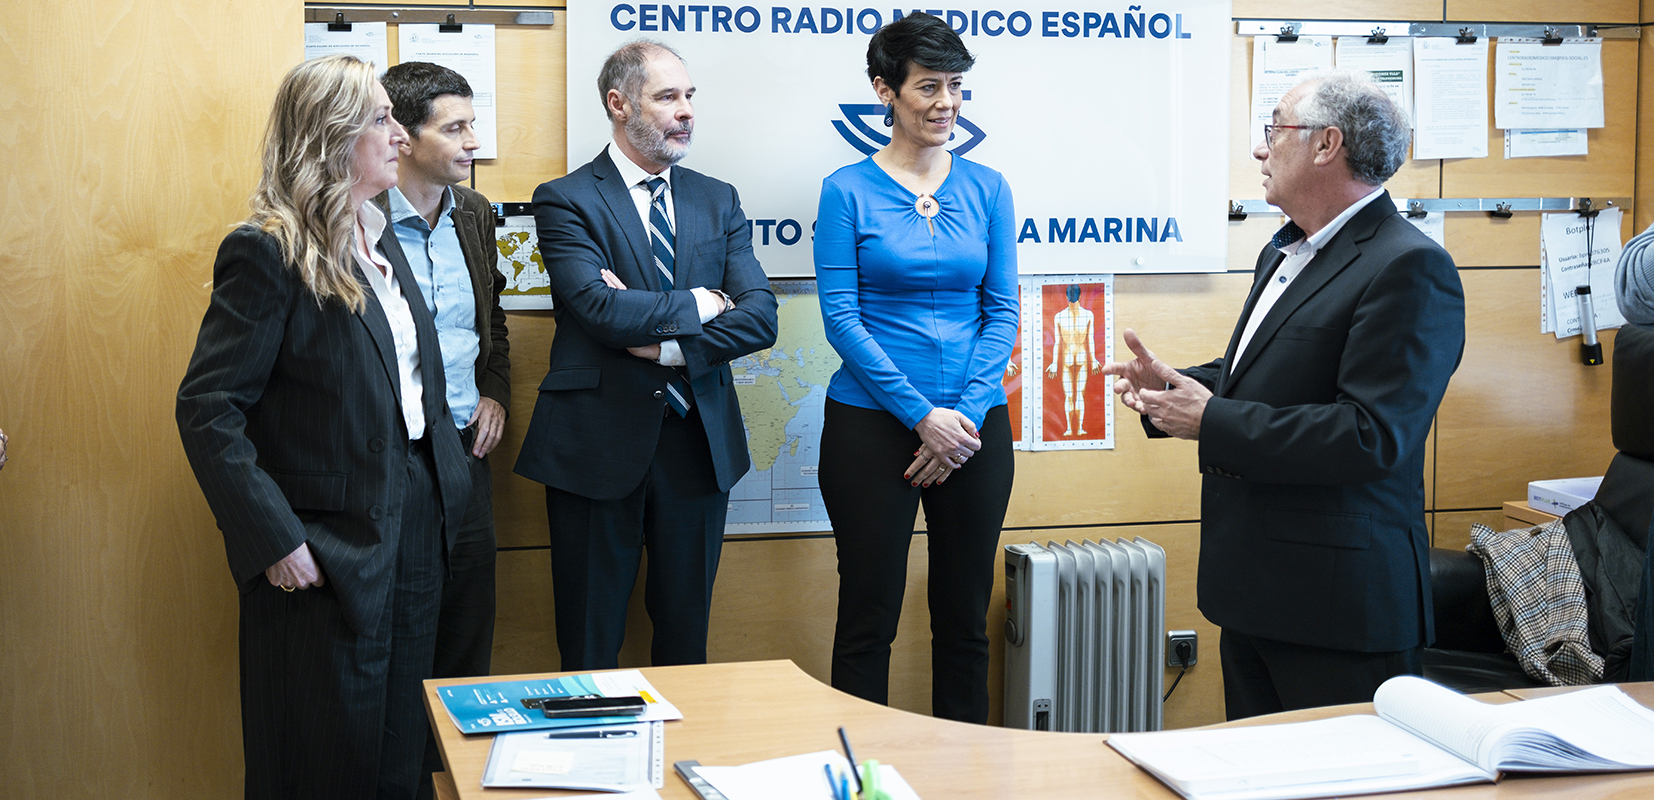 Visitando el Centro Radio Médico Español